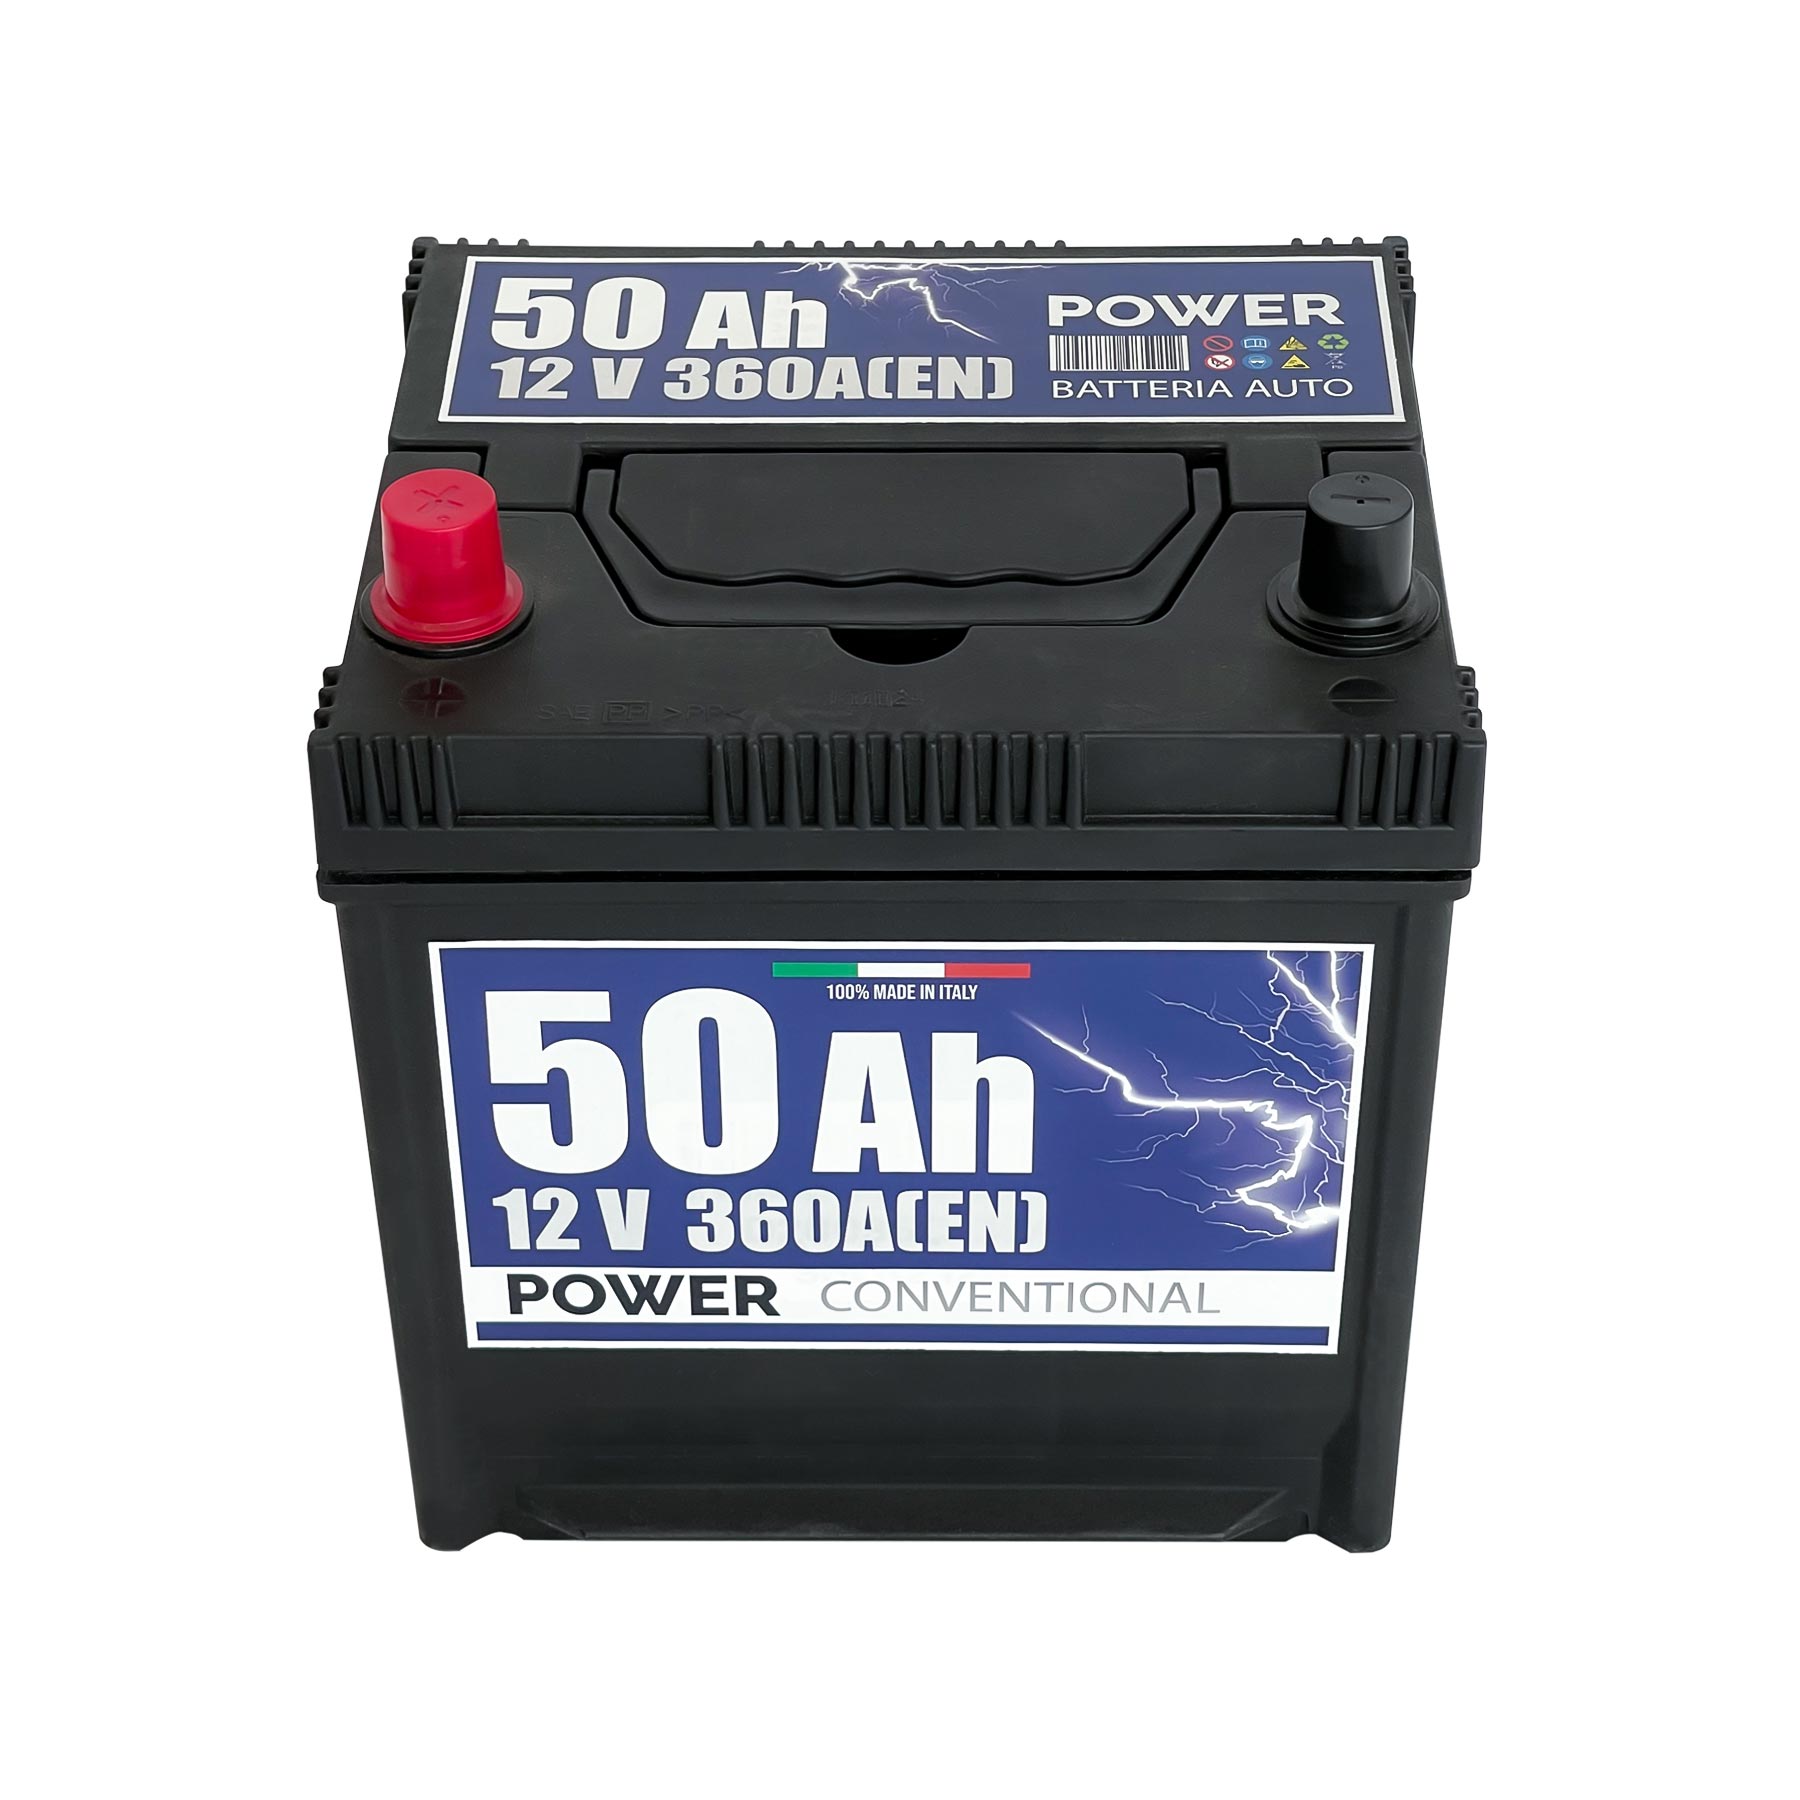 Batteria auto 50ah, 360a, 12v